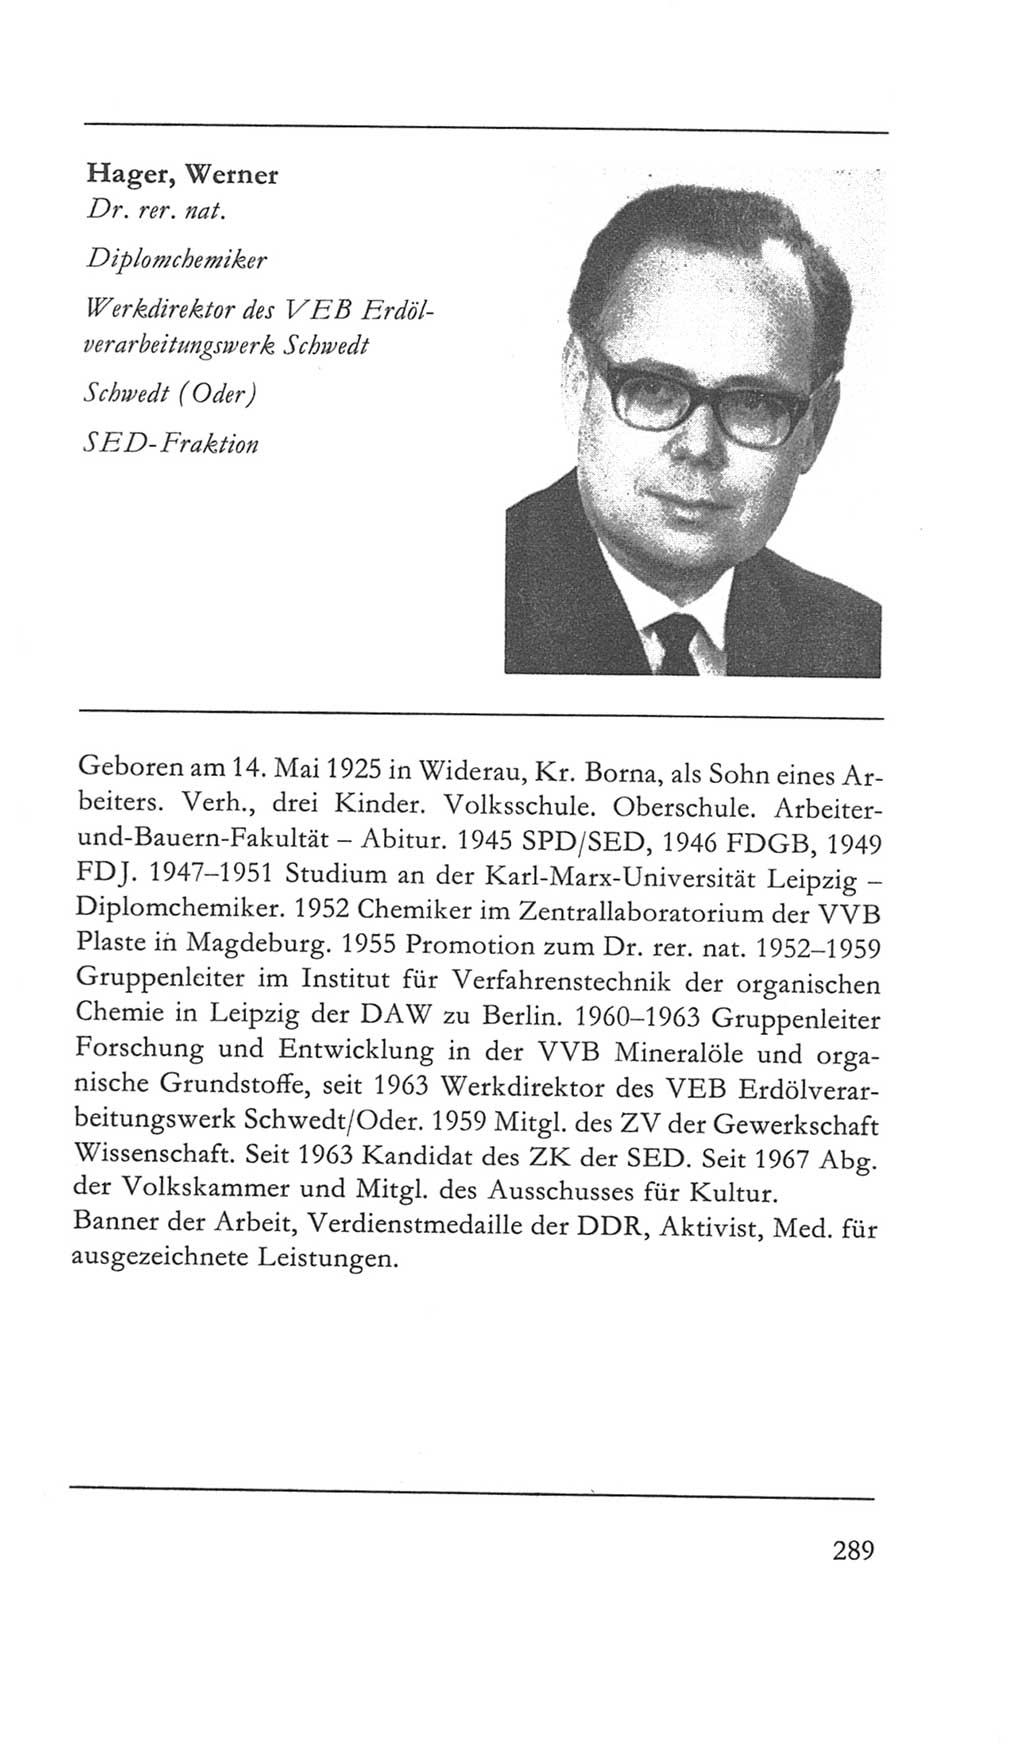 Volkskammer (VK) der Deutschen Demokratischen Republik (DDR) 5. Wahlperiode 1967-1971, Seite 289 (VK. DDR 5. WP. 1967-1971, S. 289)